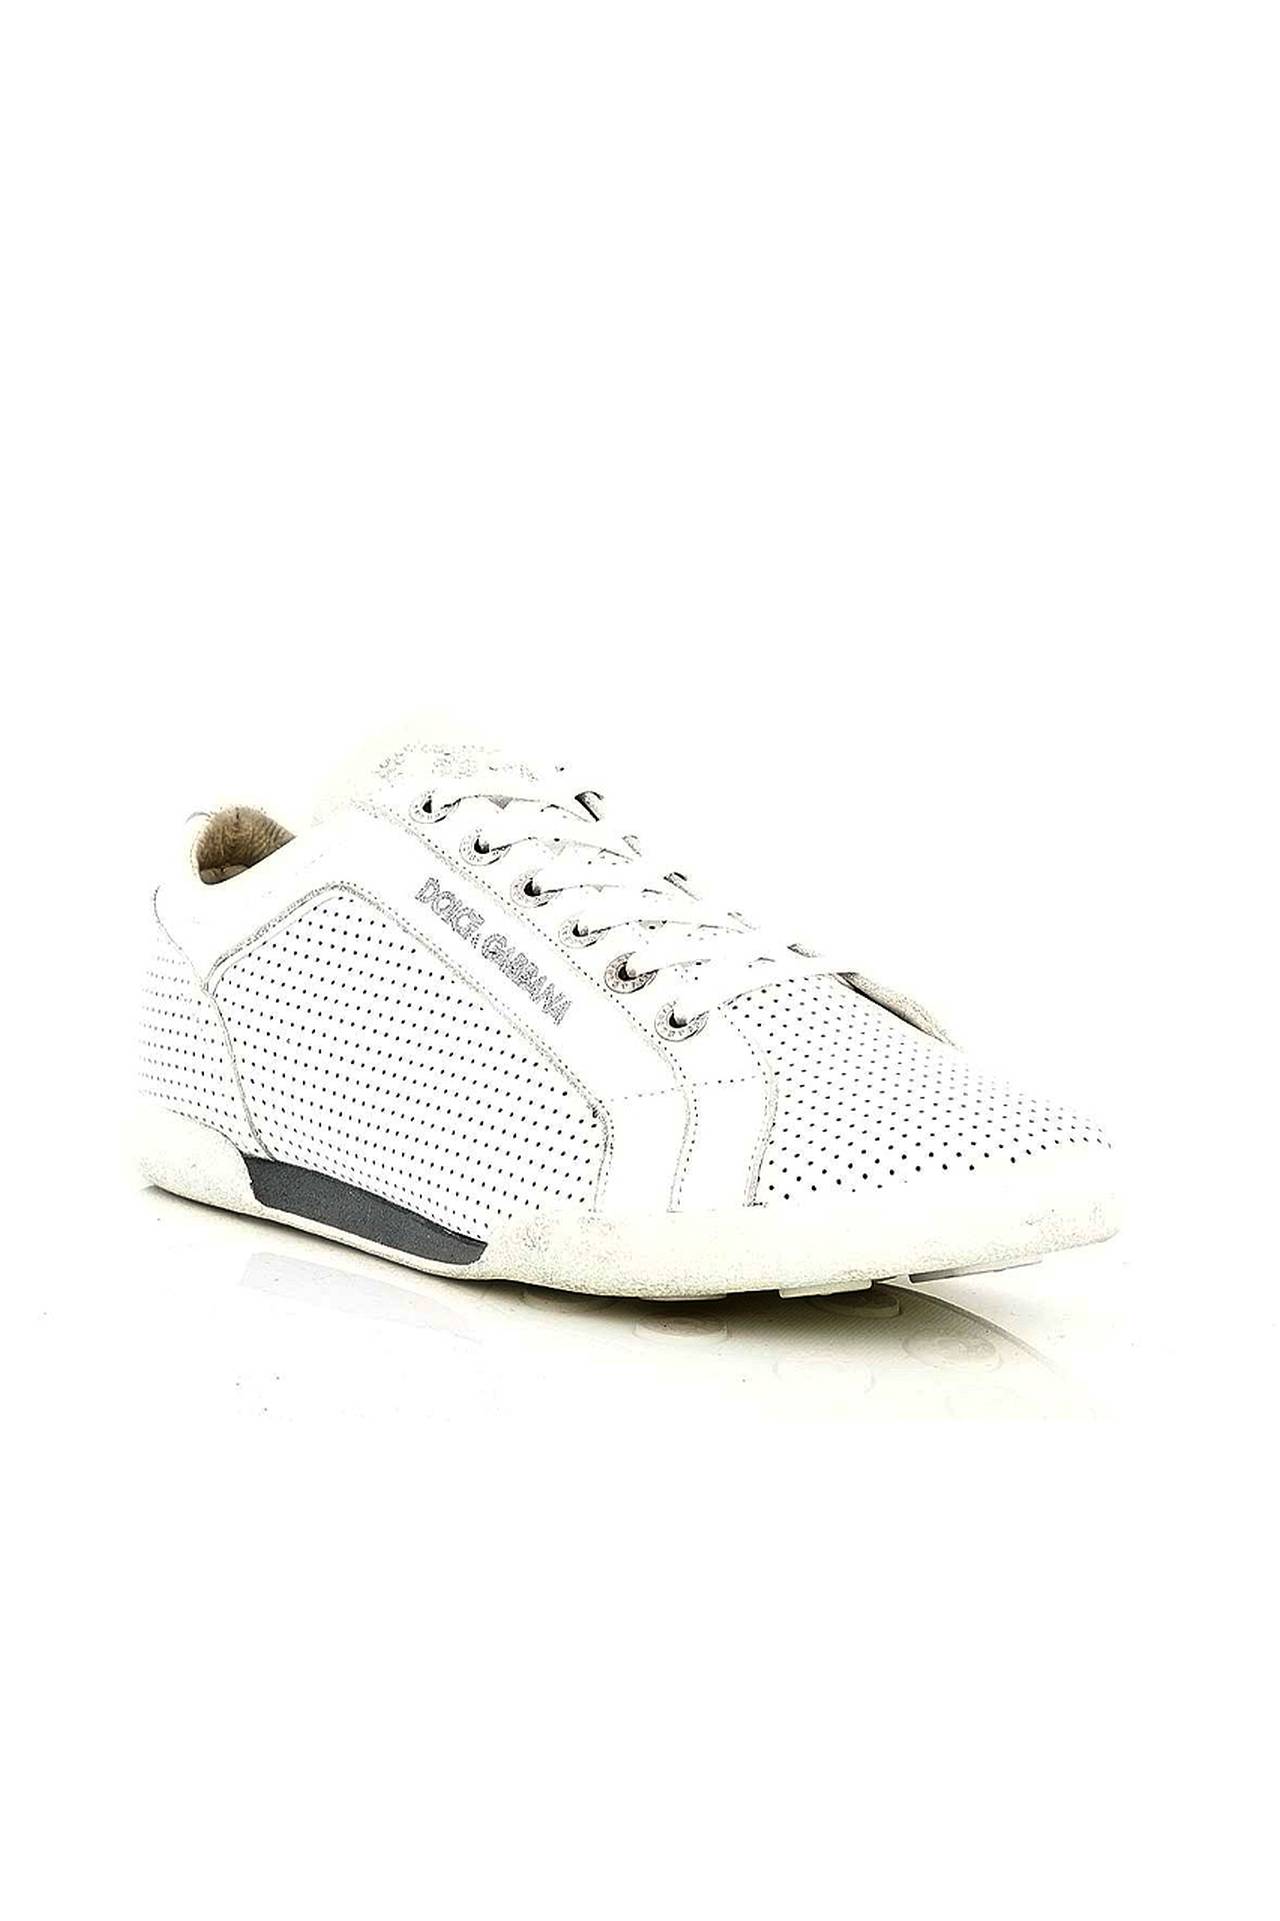 Обувь мужская Кроссовки DOLCE & GABBANA (CA0396A3446/19). Купить за 20930 руб.